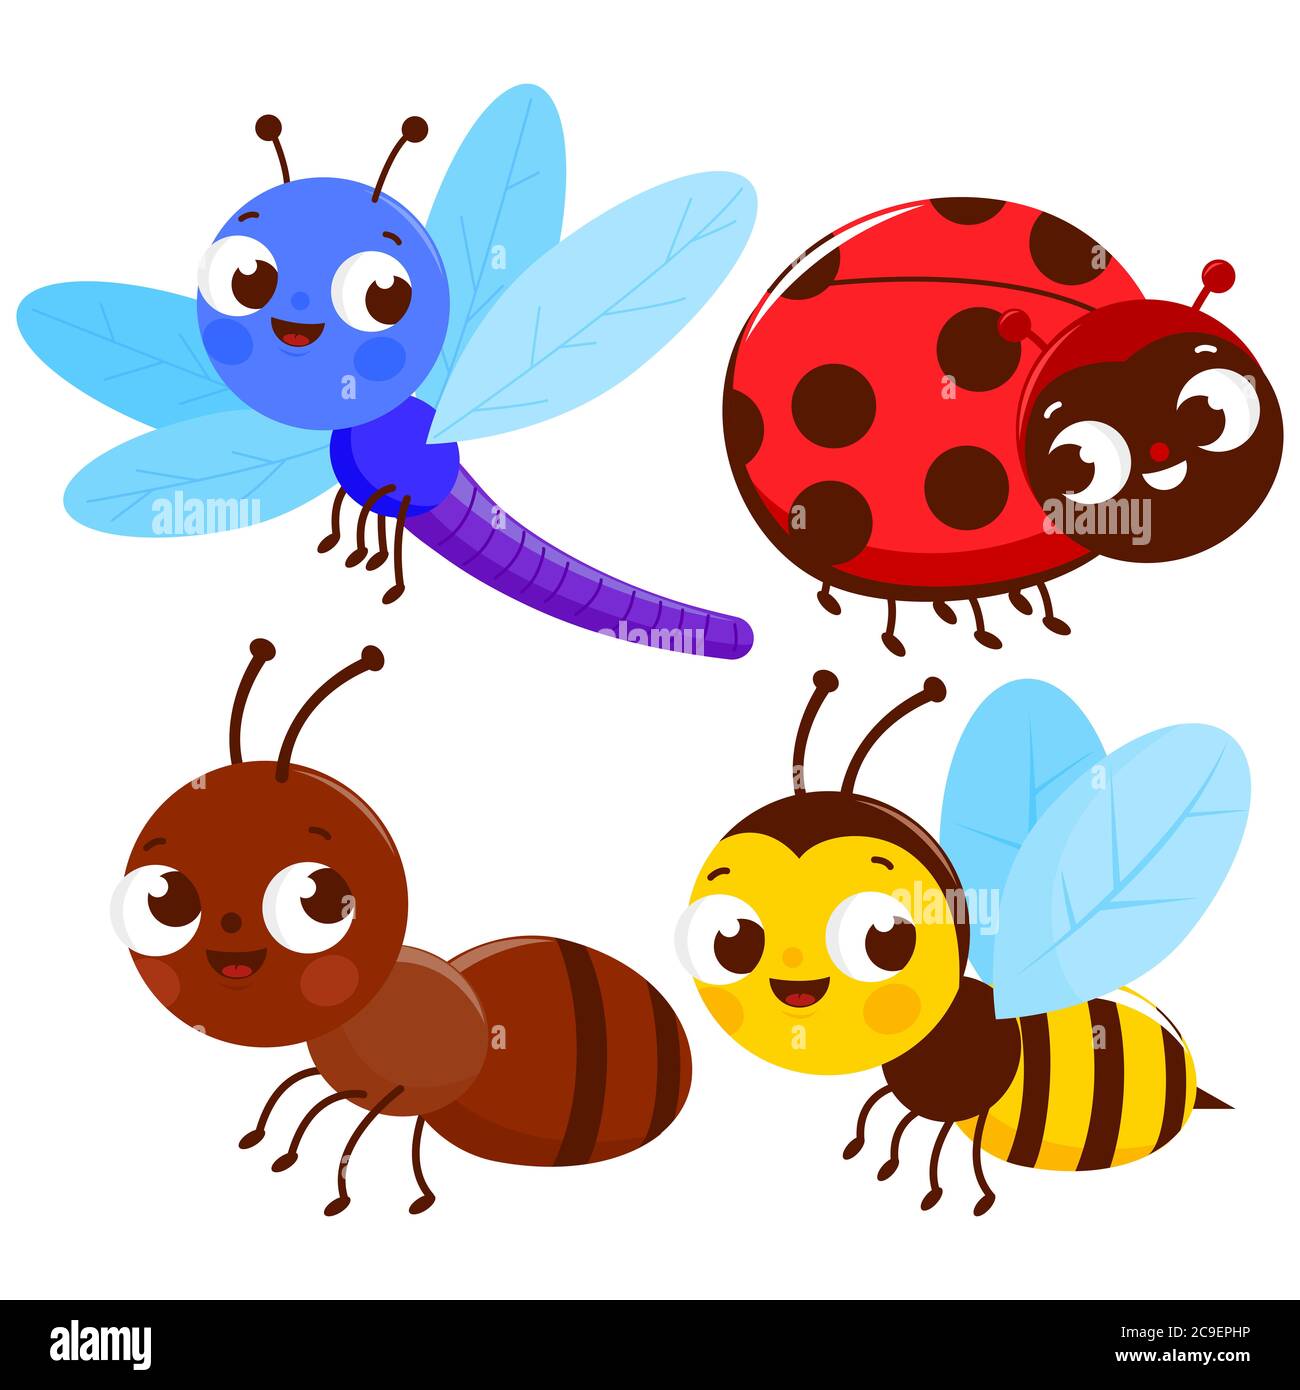 Ensemble de jolis insectes colorés. Une libellule, une coccinelle, un fourmis et une abeille. Banque D'Images